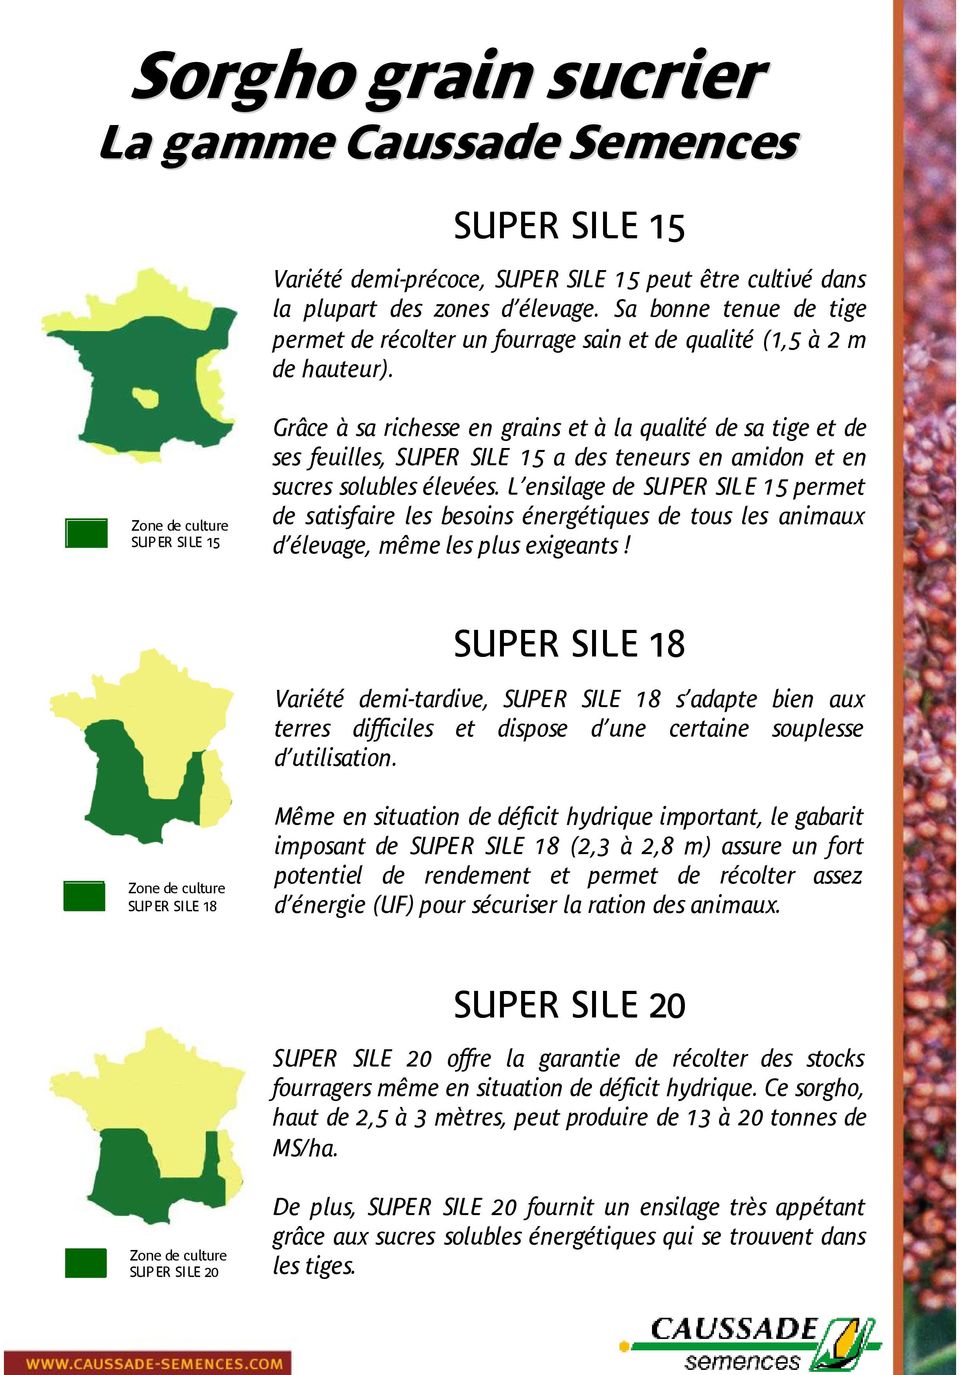 Zone de culture SUPER SILE 15 Grâce à sa richesse en grains et à la qualité de sa tige et de ses feuilles, SUPER SILE 15 a des teneurs en amidon et en sucres solubles élevées.